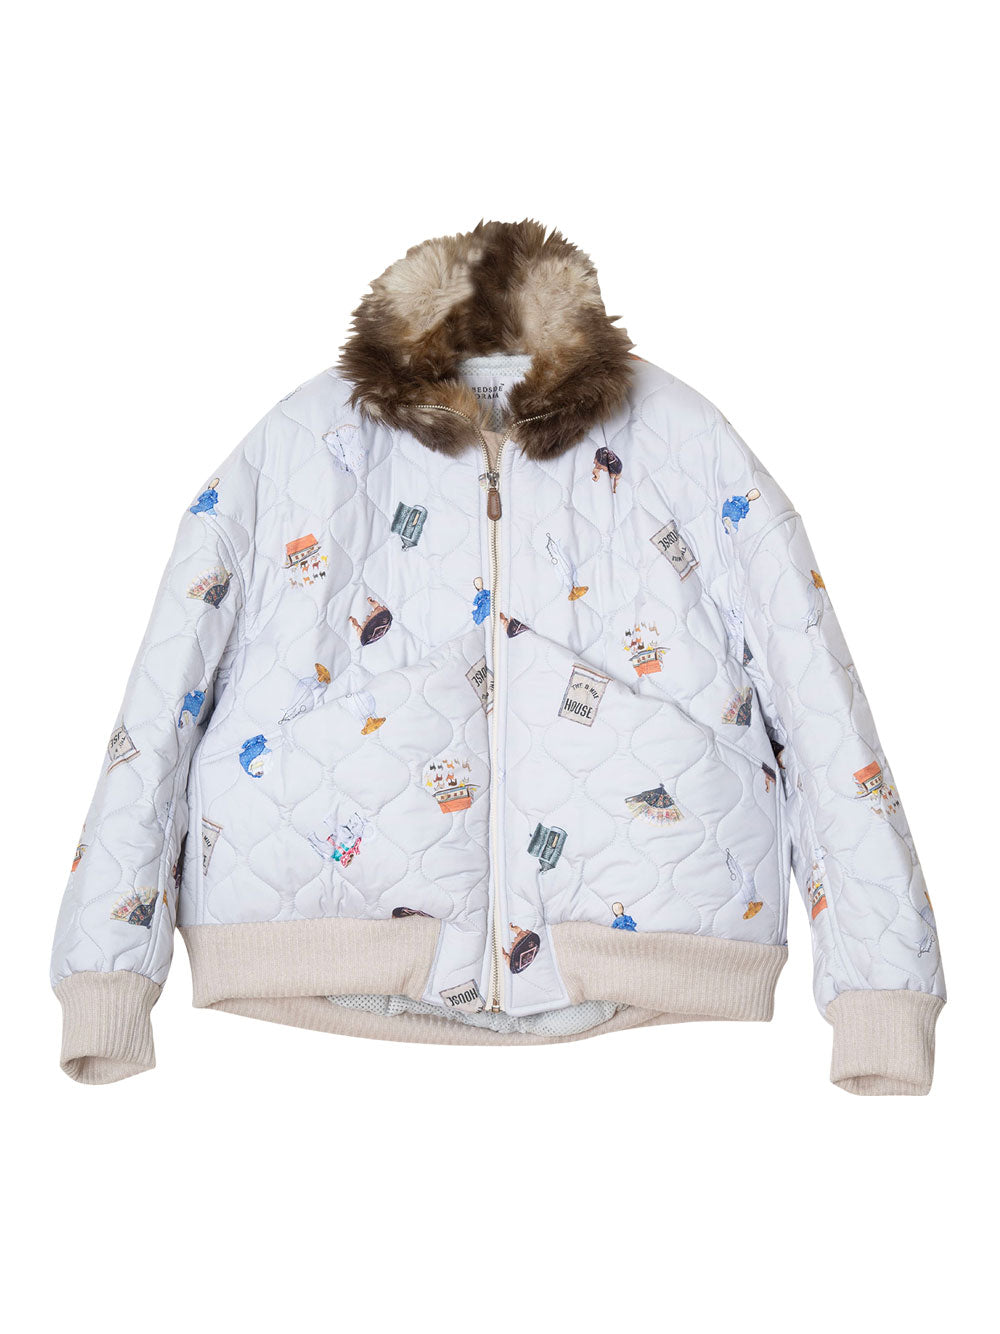 PREORDER: Barn Antique Jacket